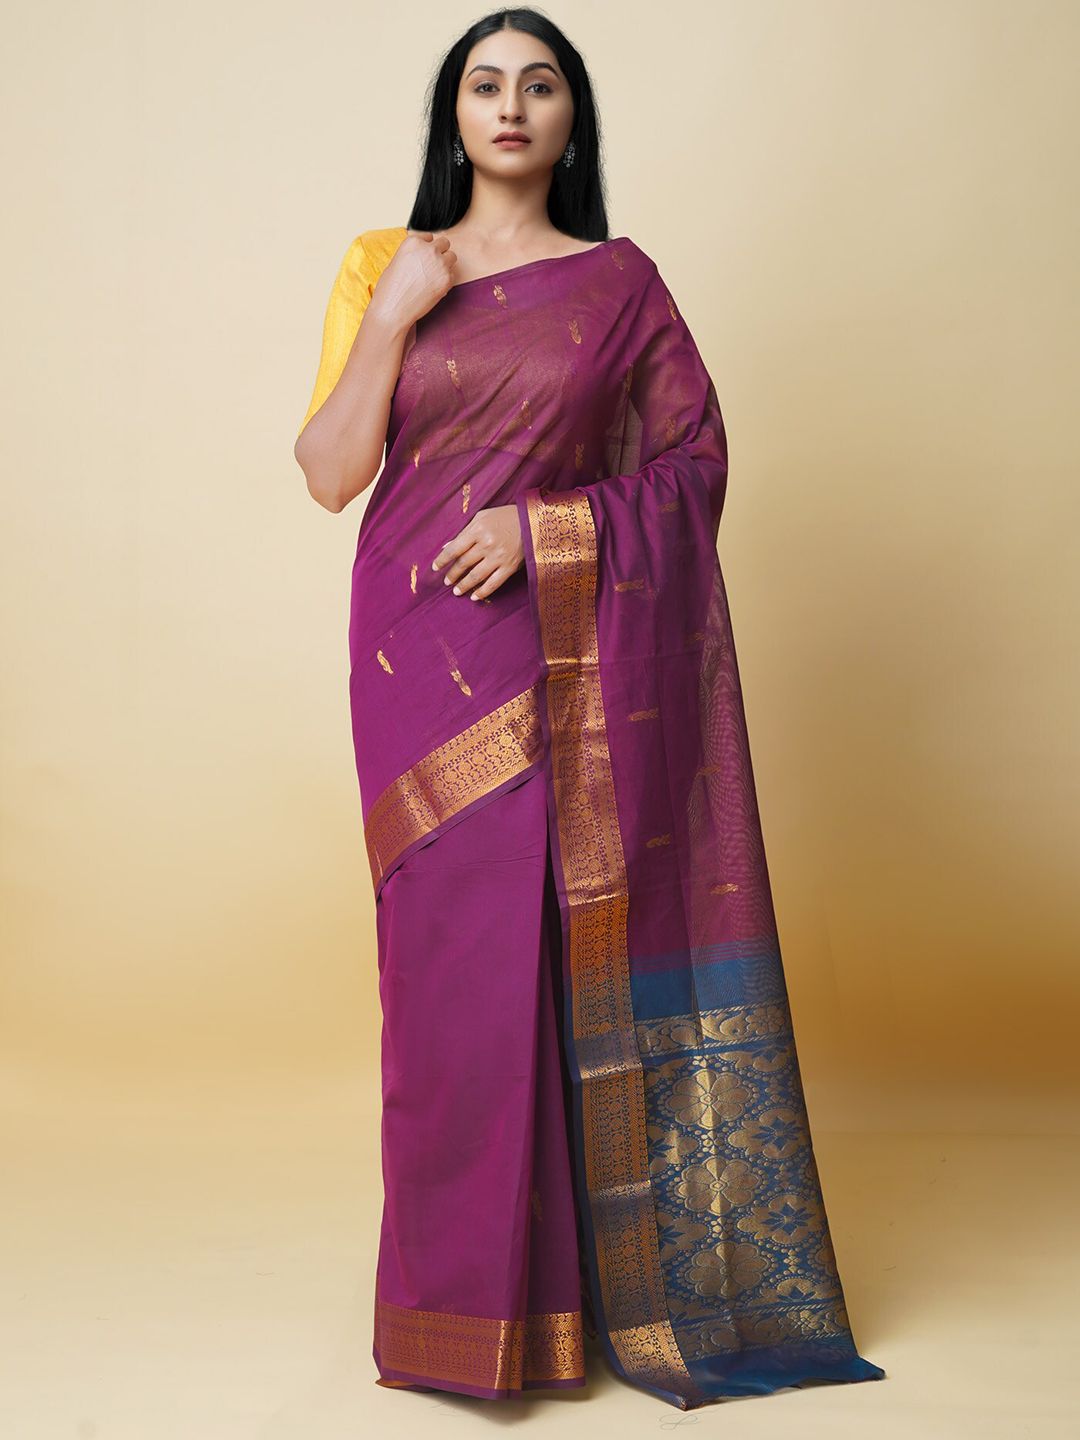 Unnati Silks Ethnic Motifs Woven Design Zari Pure Cotton Gadwal Saree Price in India